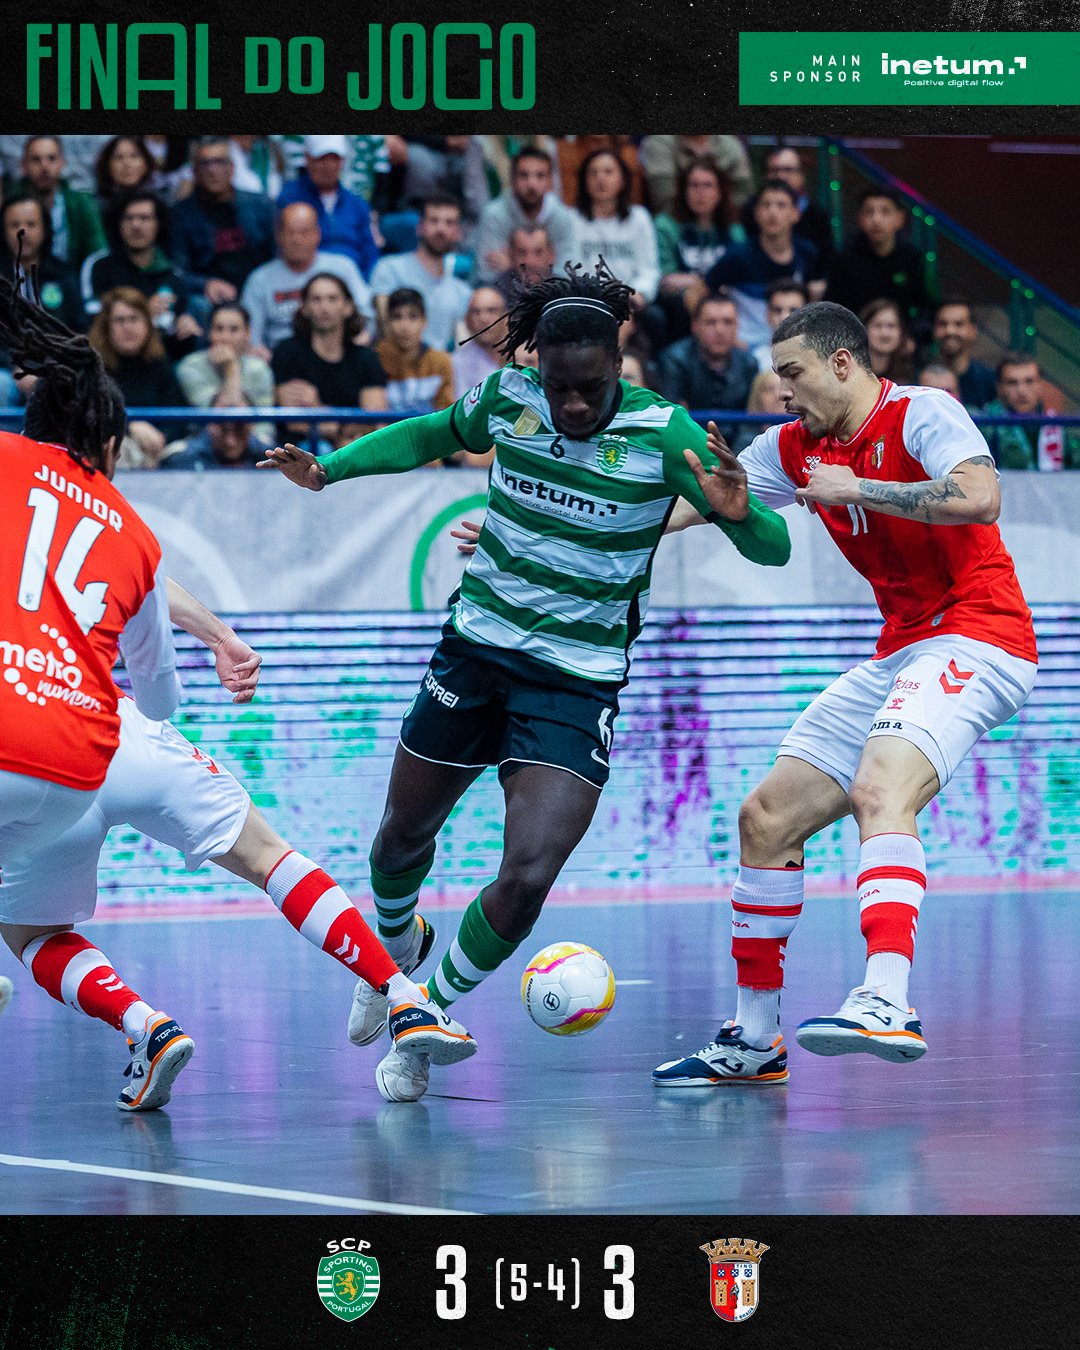 Sporting Clube de Portugal - Modalidades - Os Leões do #FutsalSCP empataram  frente ao CR Leões P. Salvo.